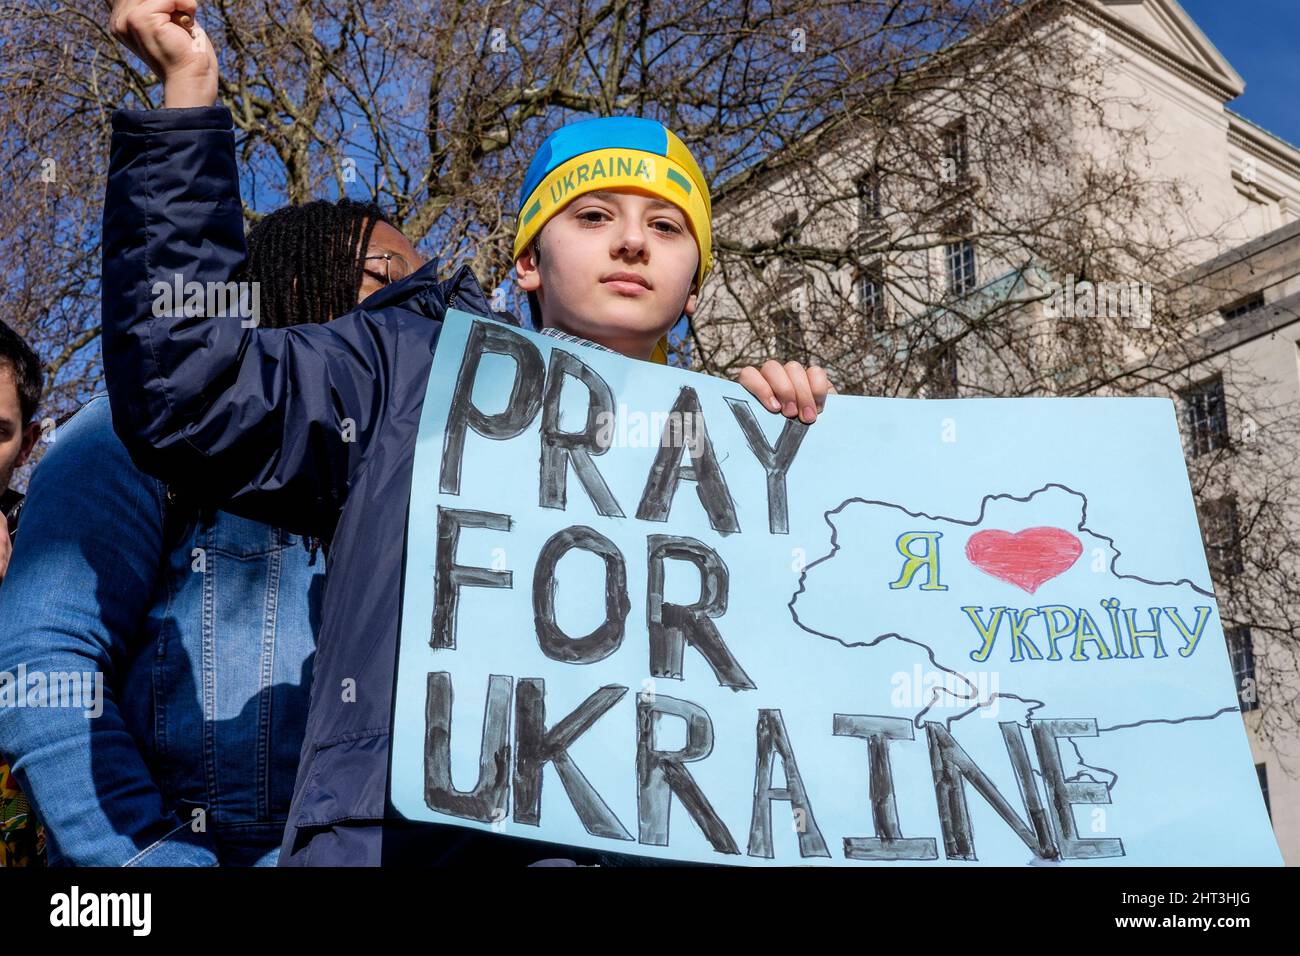 26.. Februar 2022: Ukrainische Staatsbürger und pro-ukrainische Anhänger versammeln sich in Whitehall, um gegen die russische Invasion in der Ukraine zu protestieren. London, Großbritannien. Im Bild: Ein kleiner Junge steht über der Menge und hält ein Plakat für Gebete für die Ukraine. Stockfoto